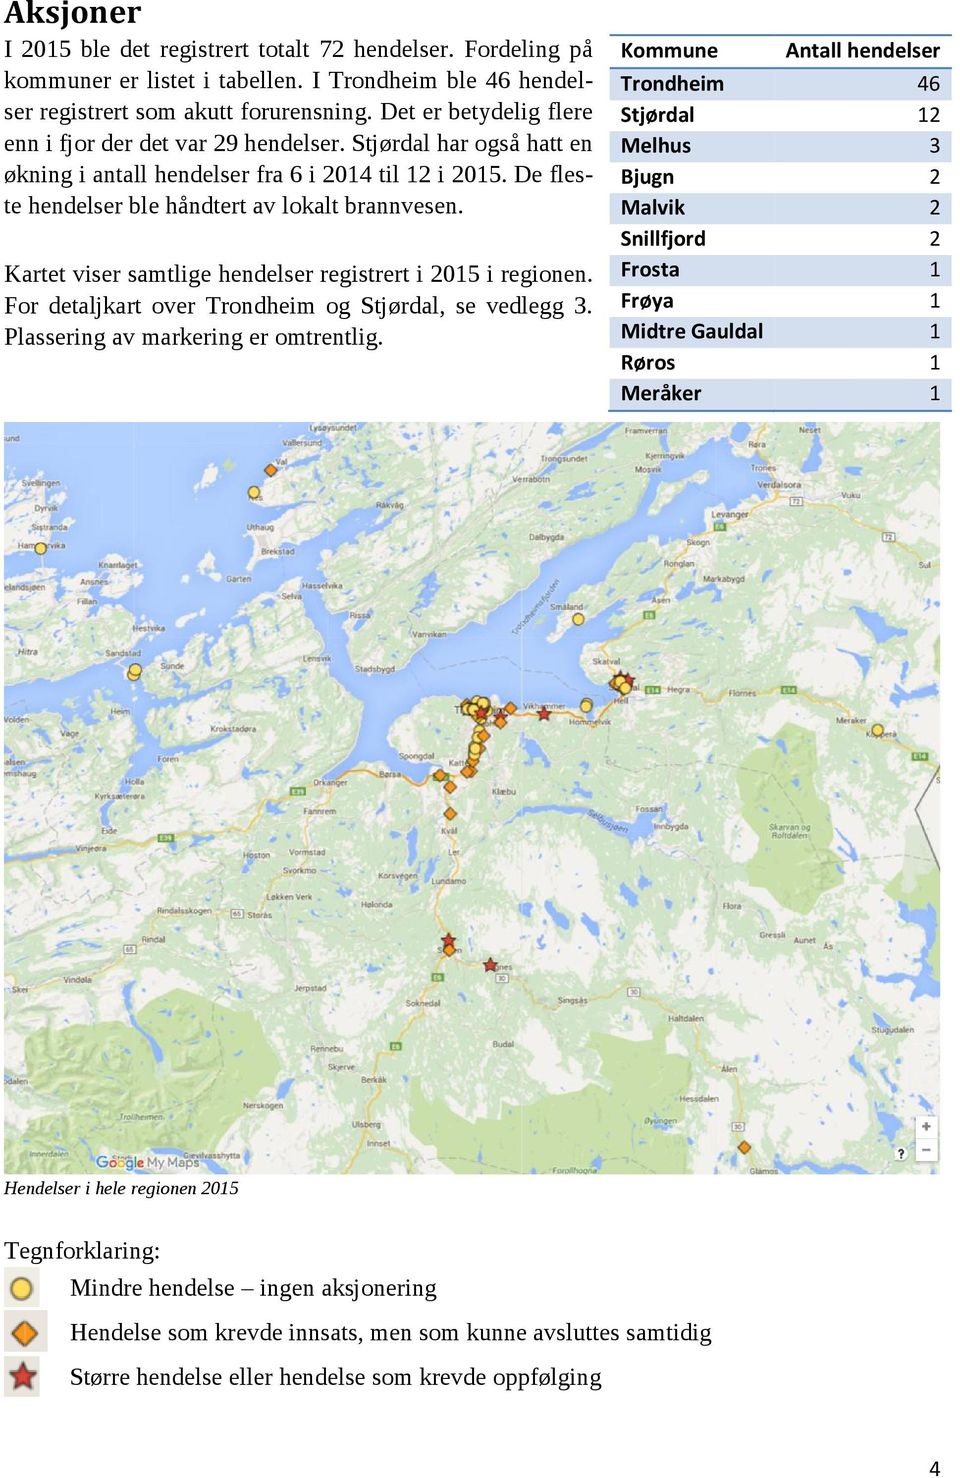 Kartet viser samtlige hendelser registrert i 2015 i regionen. For detaljkart over Trondheim og Stjørdal, se vedlegg 3. Plassering av markering er omtrentlig.